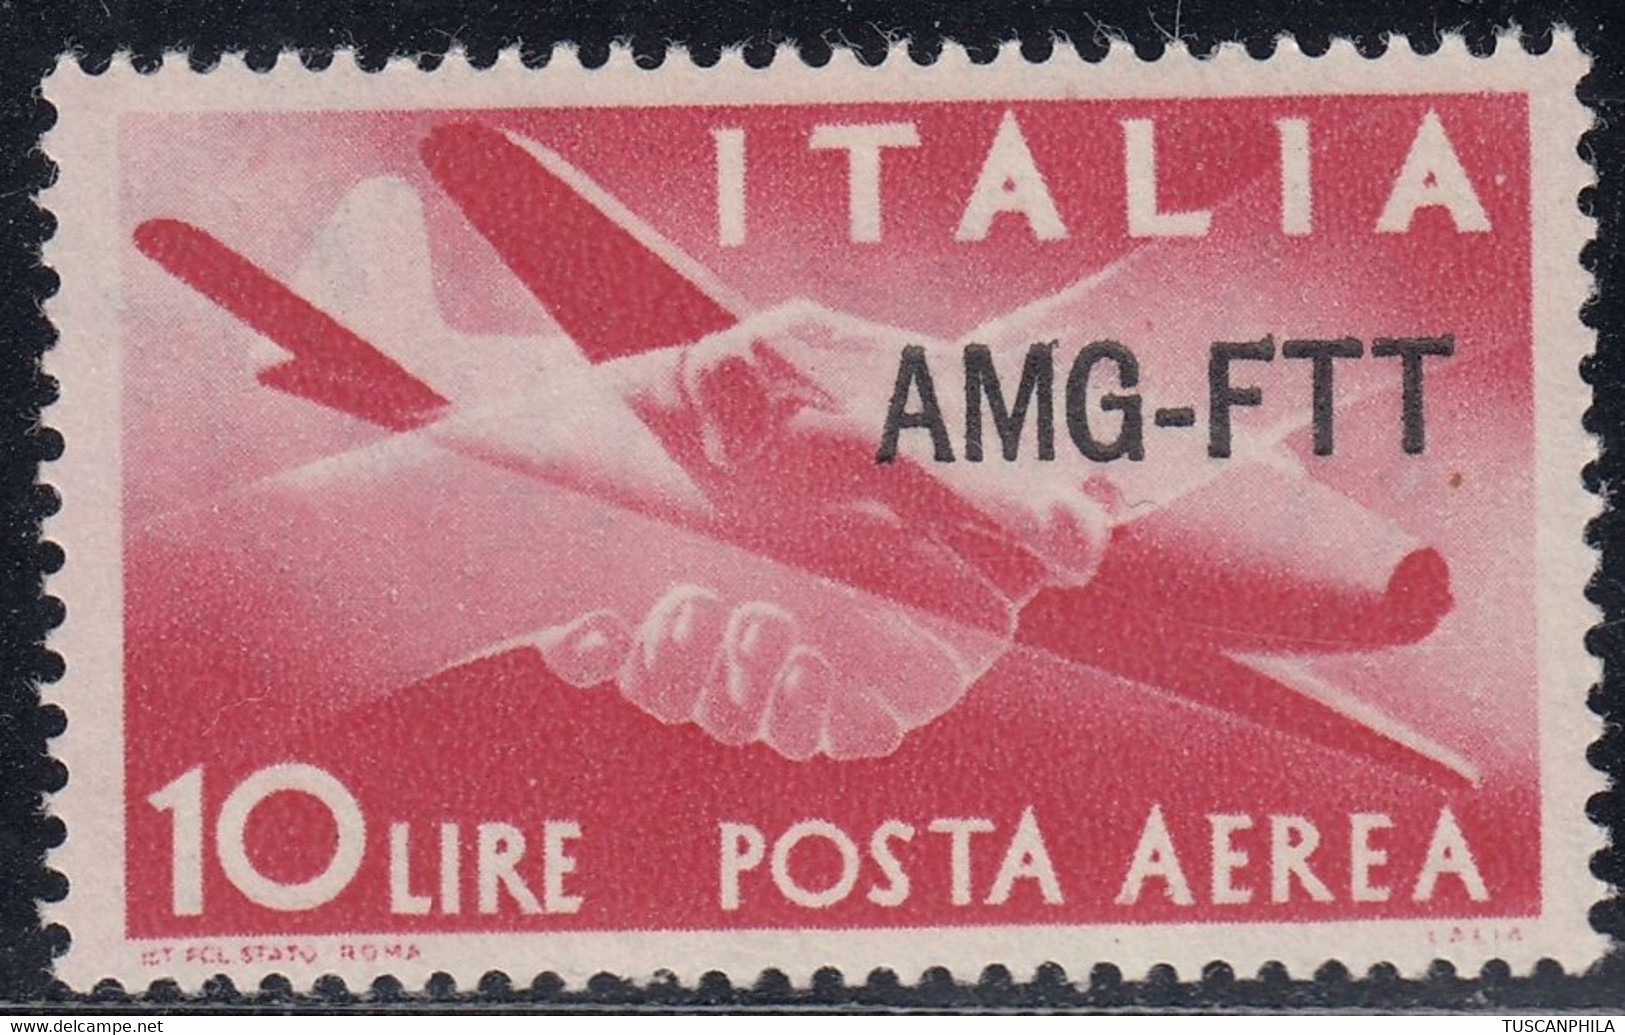 Trieste AMG-FTT Posta Aerea Varietà Decalco Sass. A20h MNH** Cv. 12 - Luchtpost